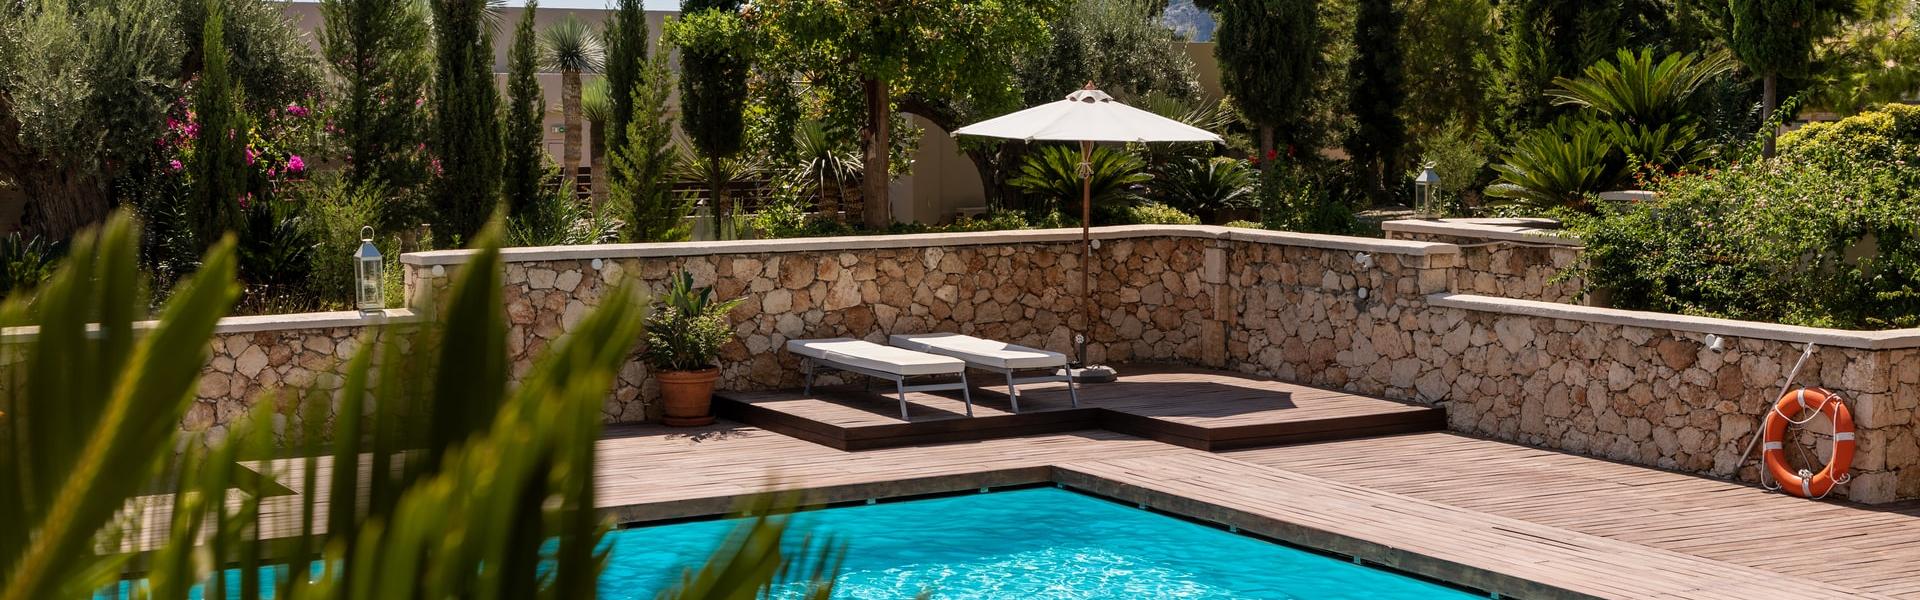 Ferienhaus mit Pool auf Lanzarote - Wimdu